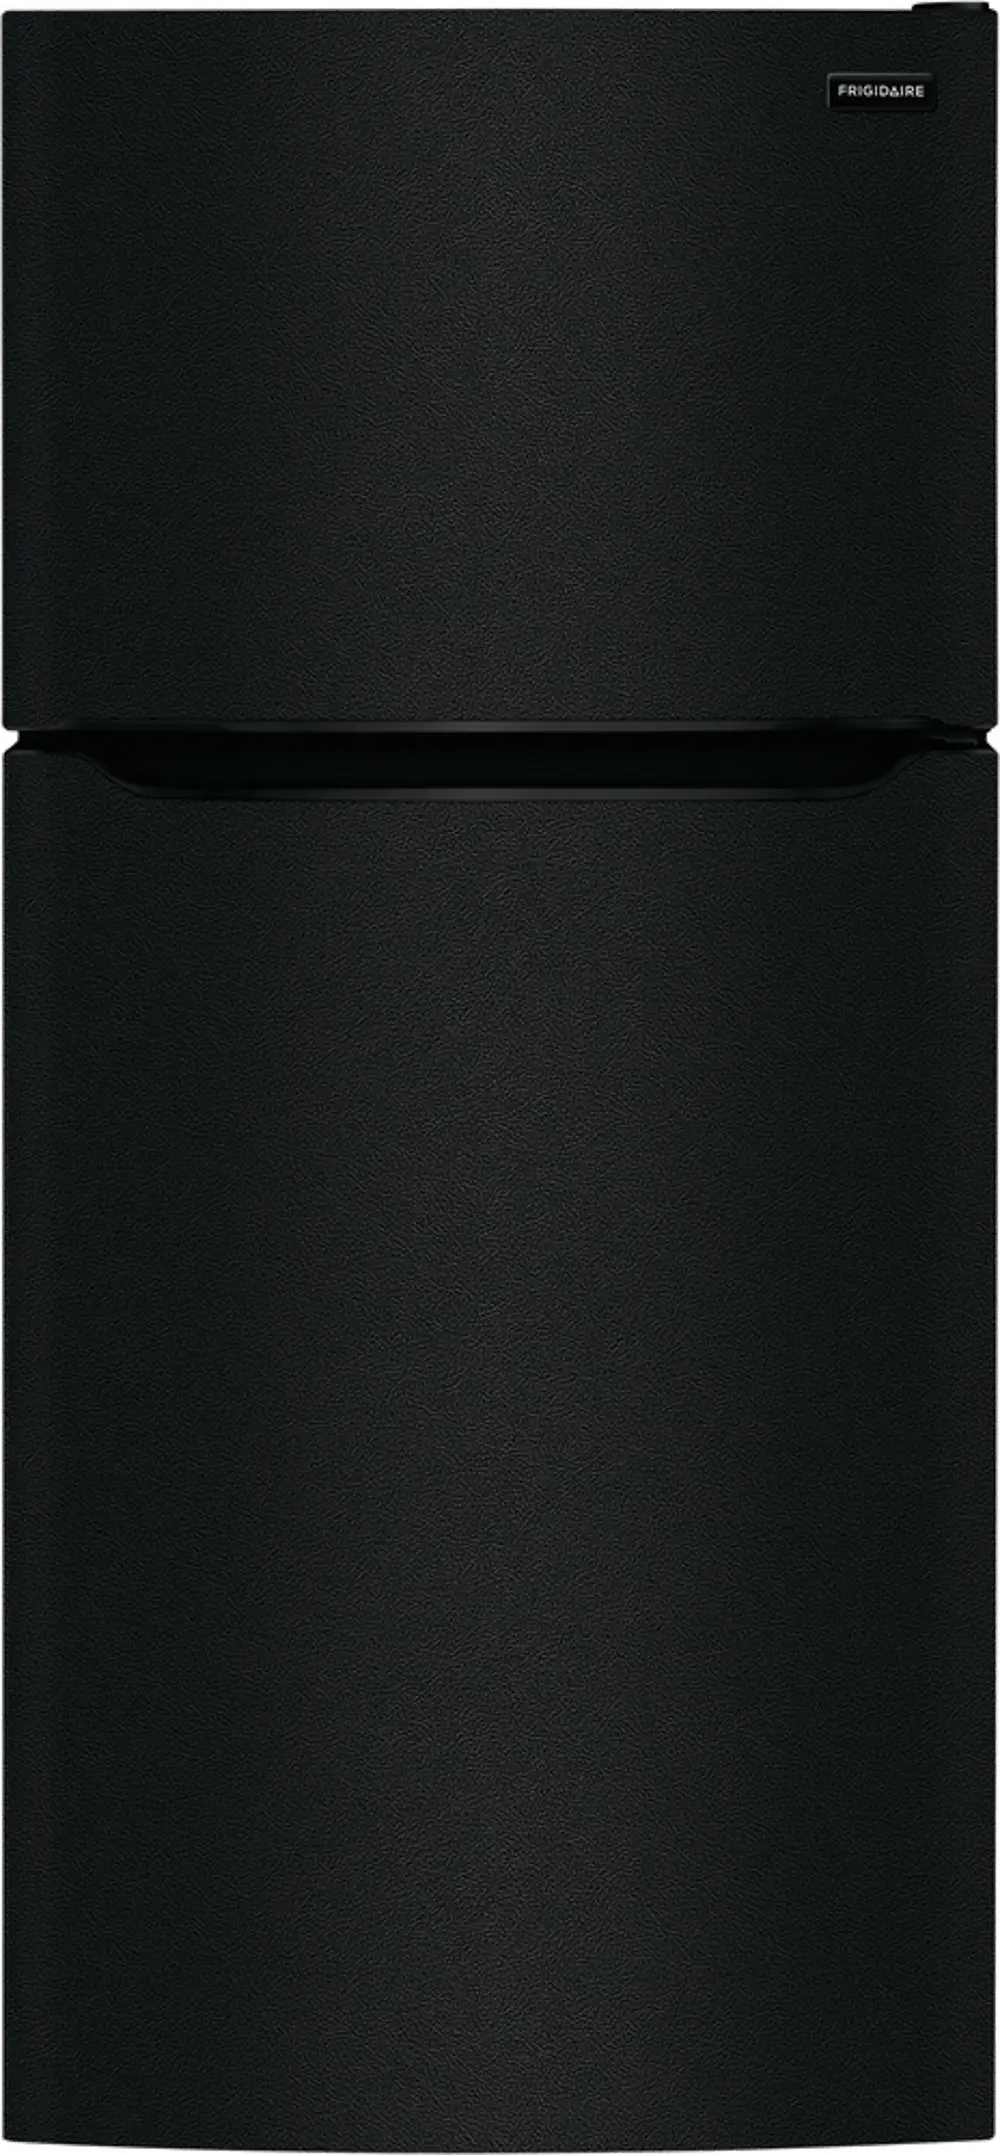 FFTR1814WB Frigidaire 18.3 cu. ft. Top Freezer Refrigerator - Black-1